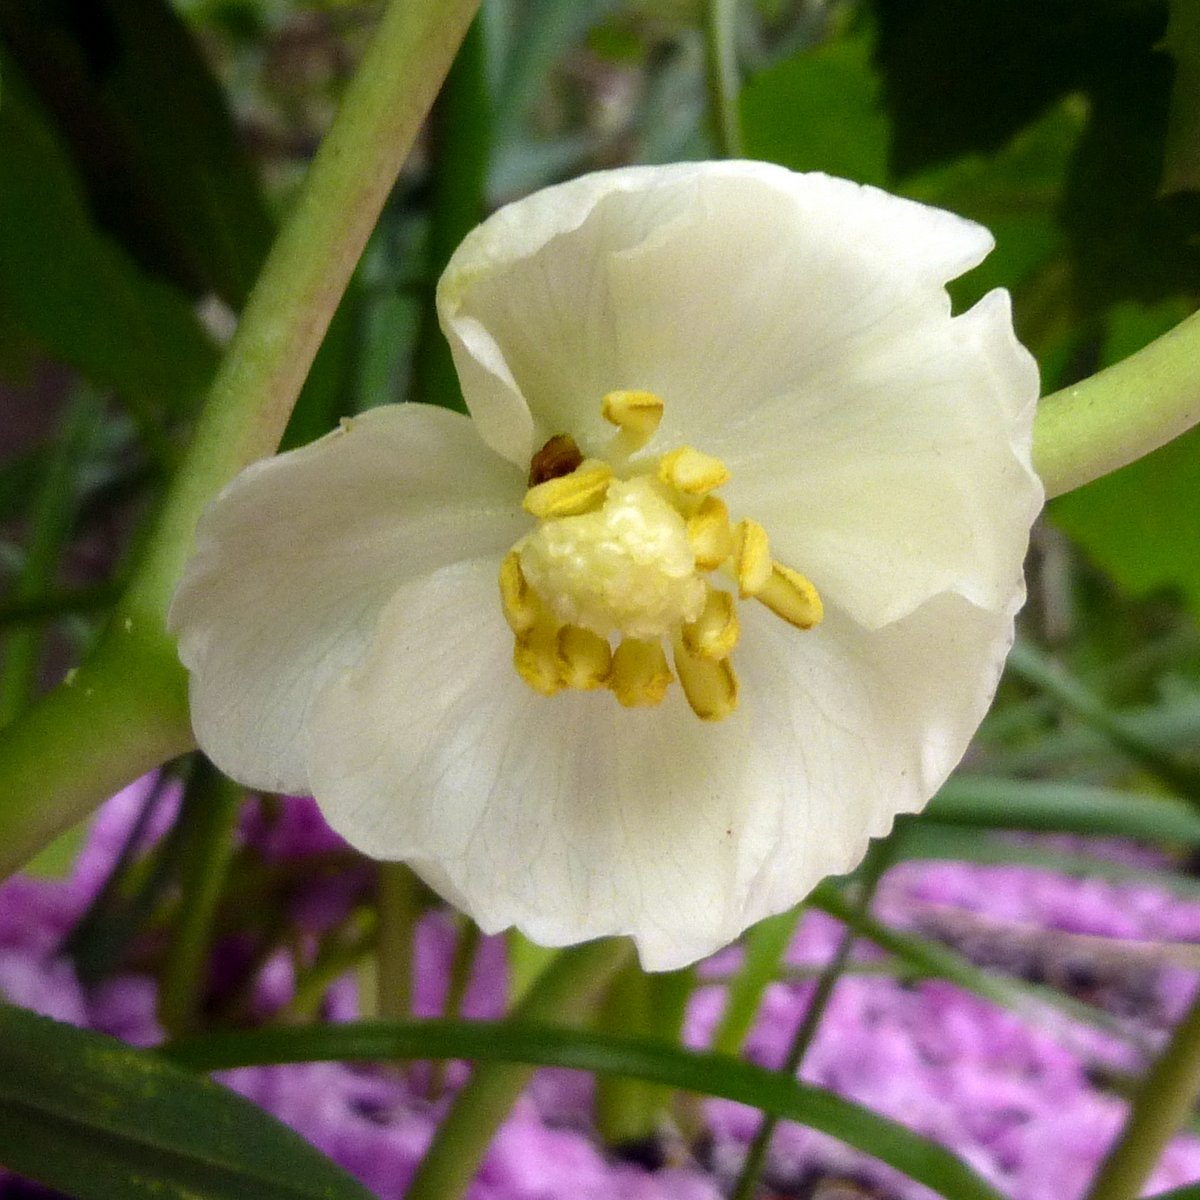 10. Mayapple Flower